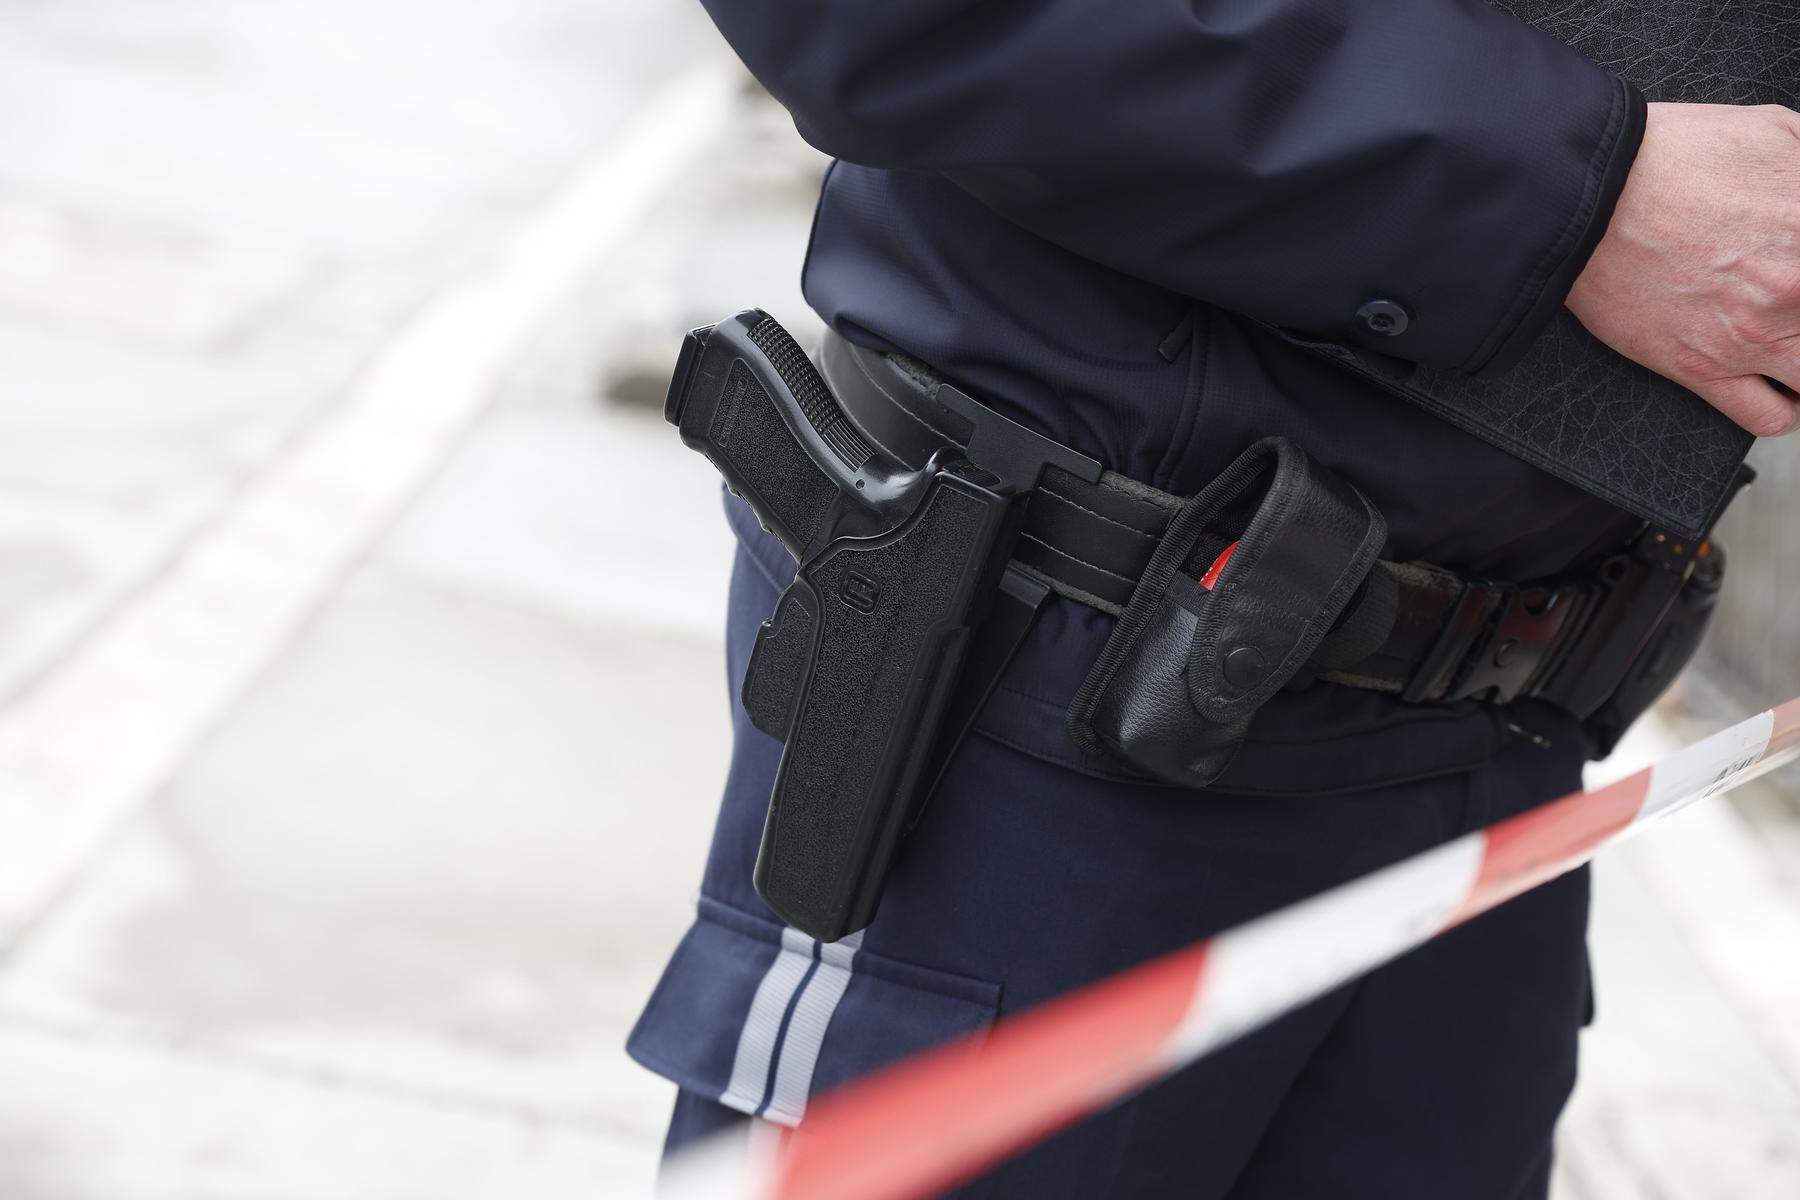 Schüsse in der Polizeiinspektion | Getöteter Polizist: Termin für Mordprozess fixiert